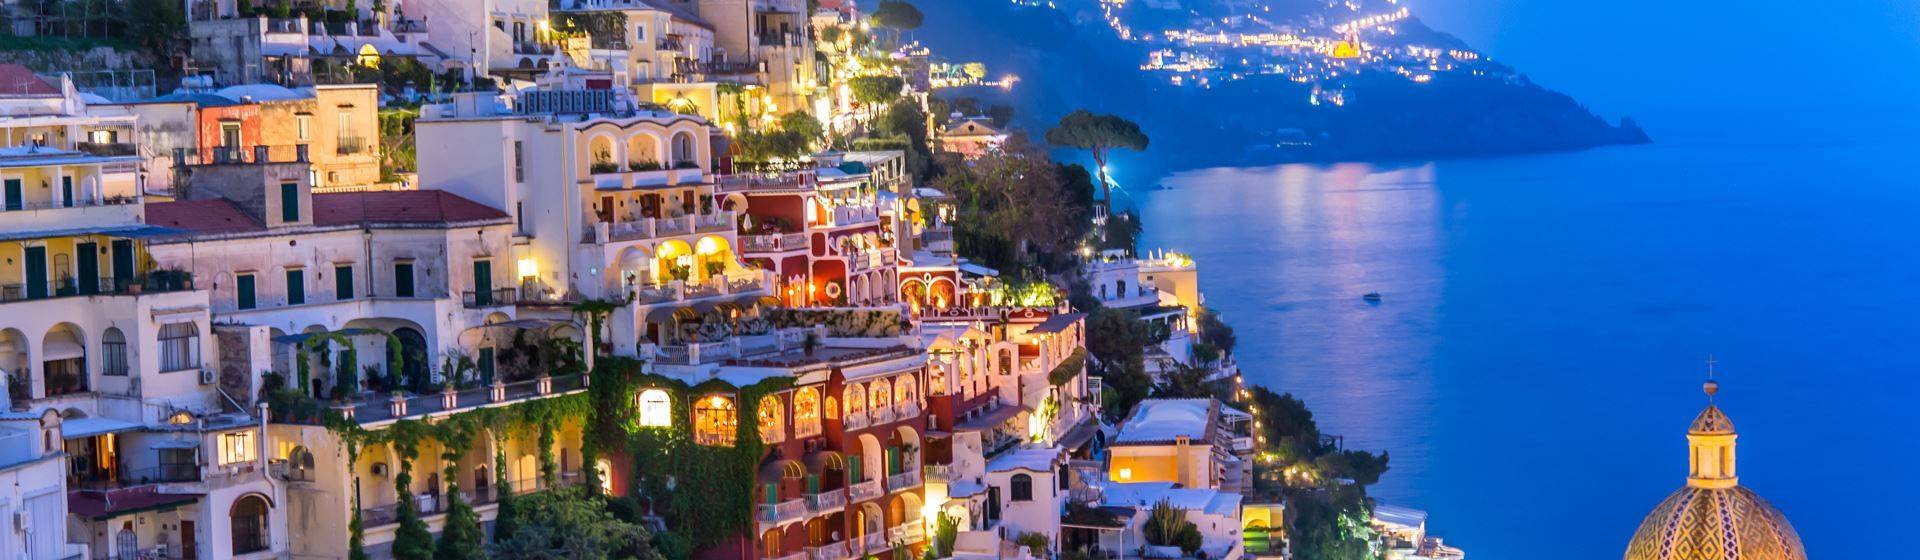 Holidays to Neapolitan Riviera Image